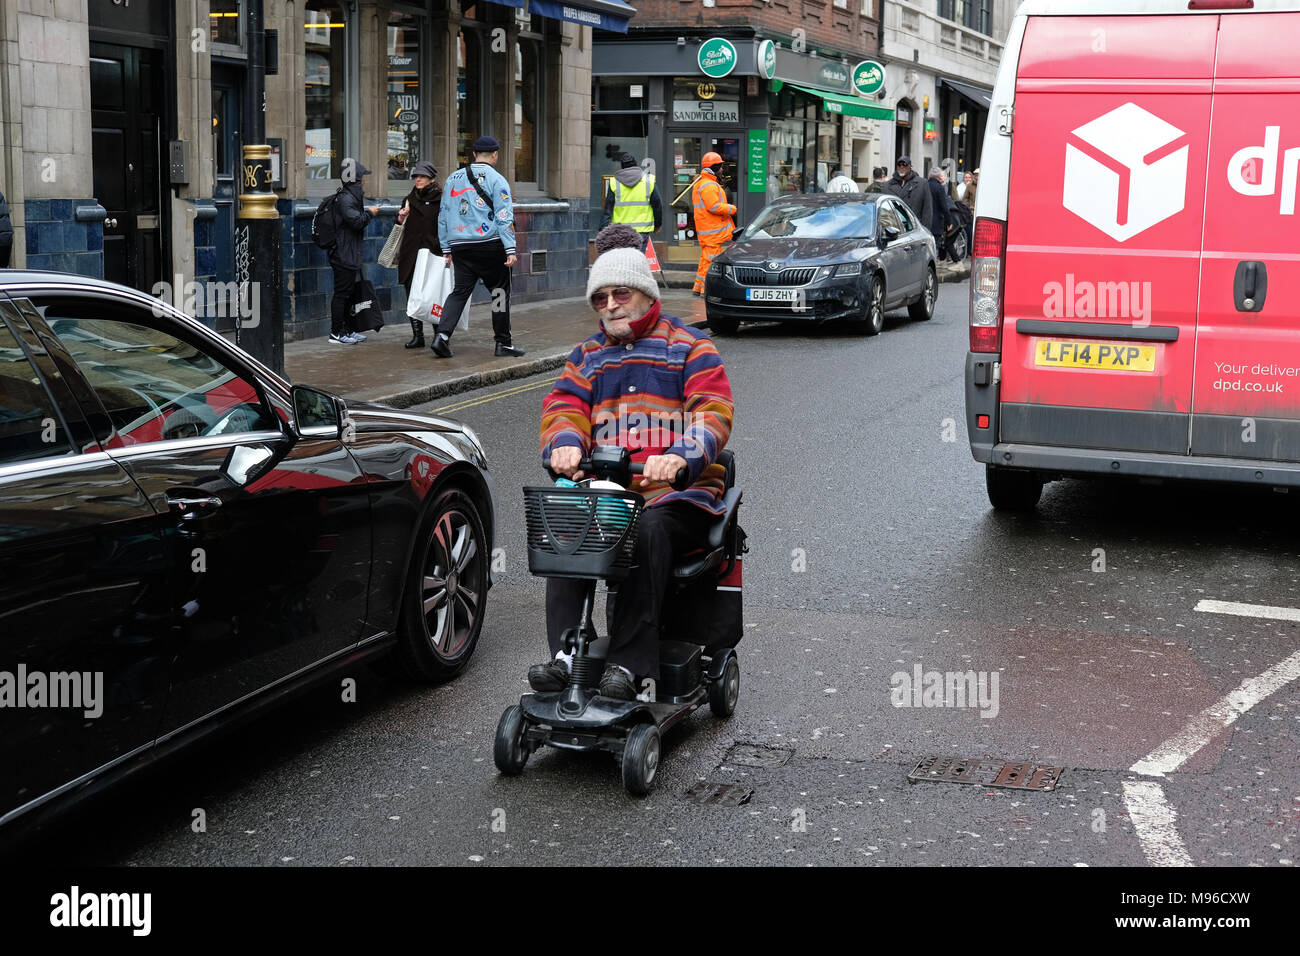 Mann auf einem Mobilität scooter in London in der Nähe von Autos. Stockfoto